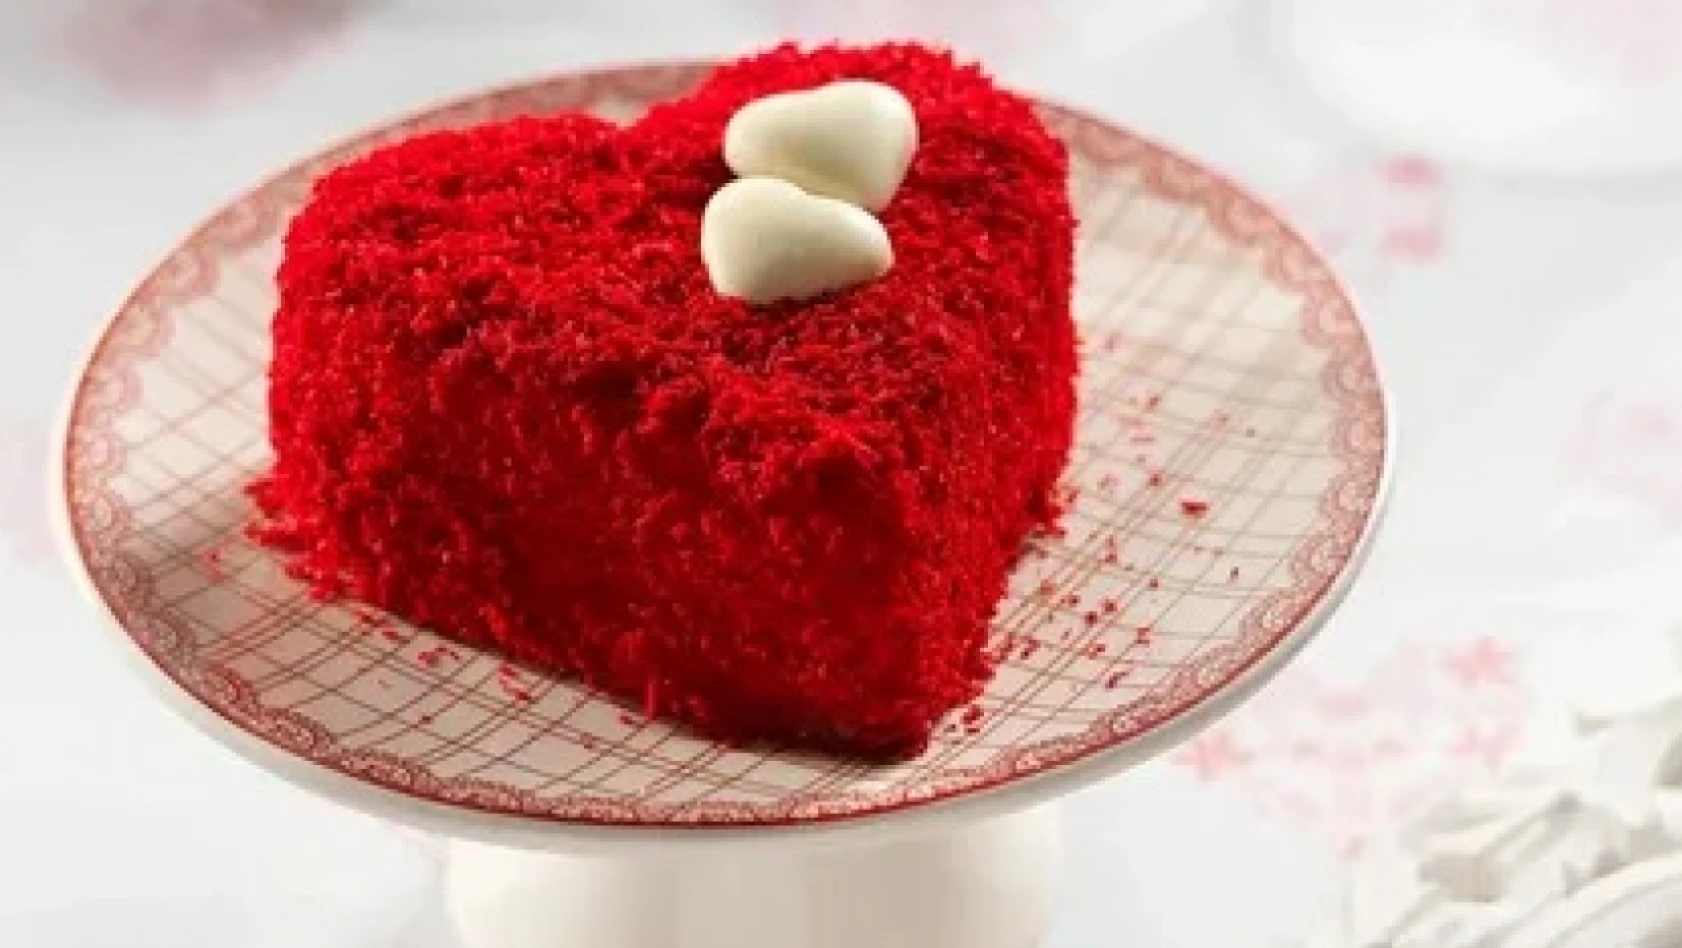 Sevgililer Günü'ne özel pasta tarifi – Red velvet pasta tarifi